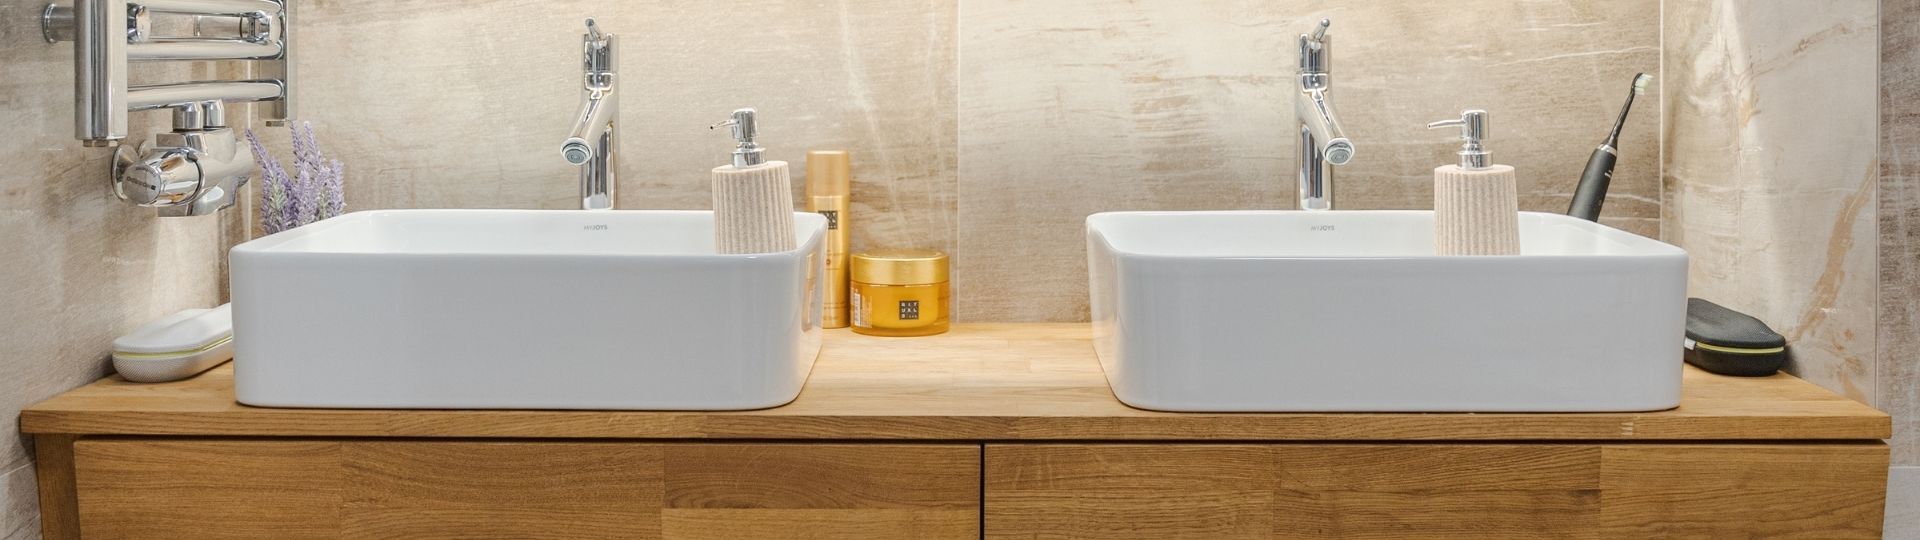 Koupelna z masivního dřeva: sázka na kvalitu